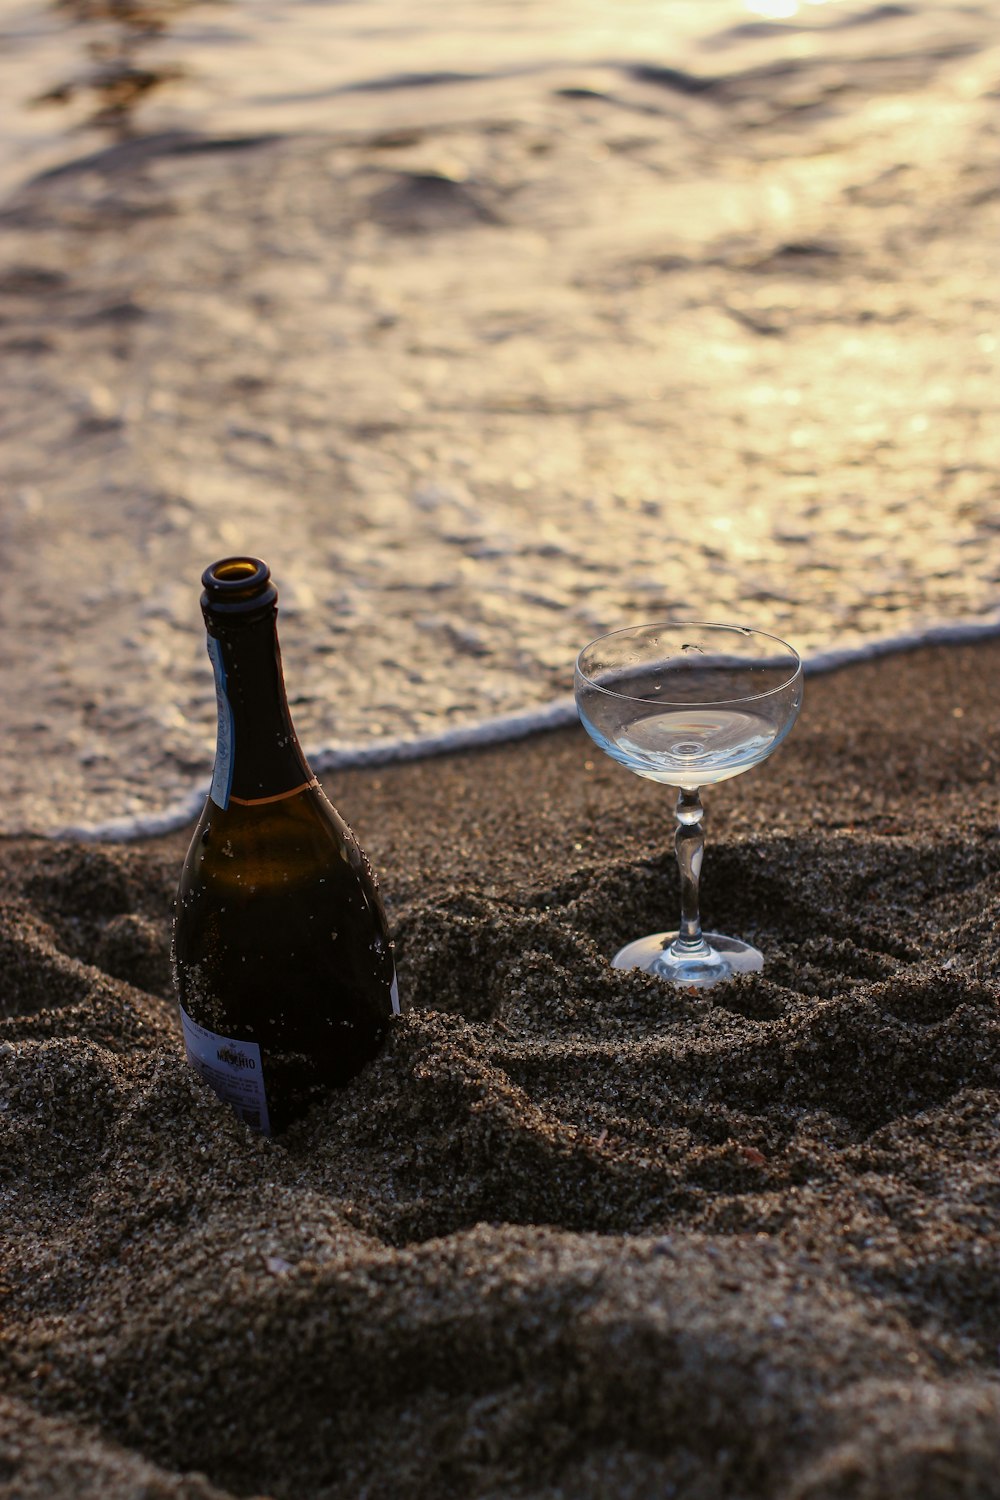 bouteille en verre noir à côté d’un verre à vin transparent sur du sable brun pendant la journée